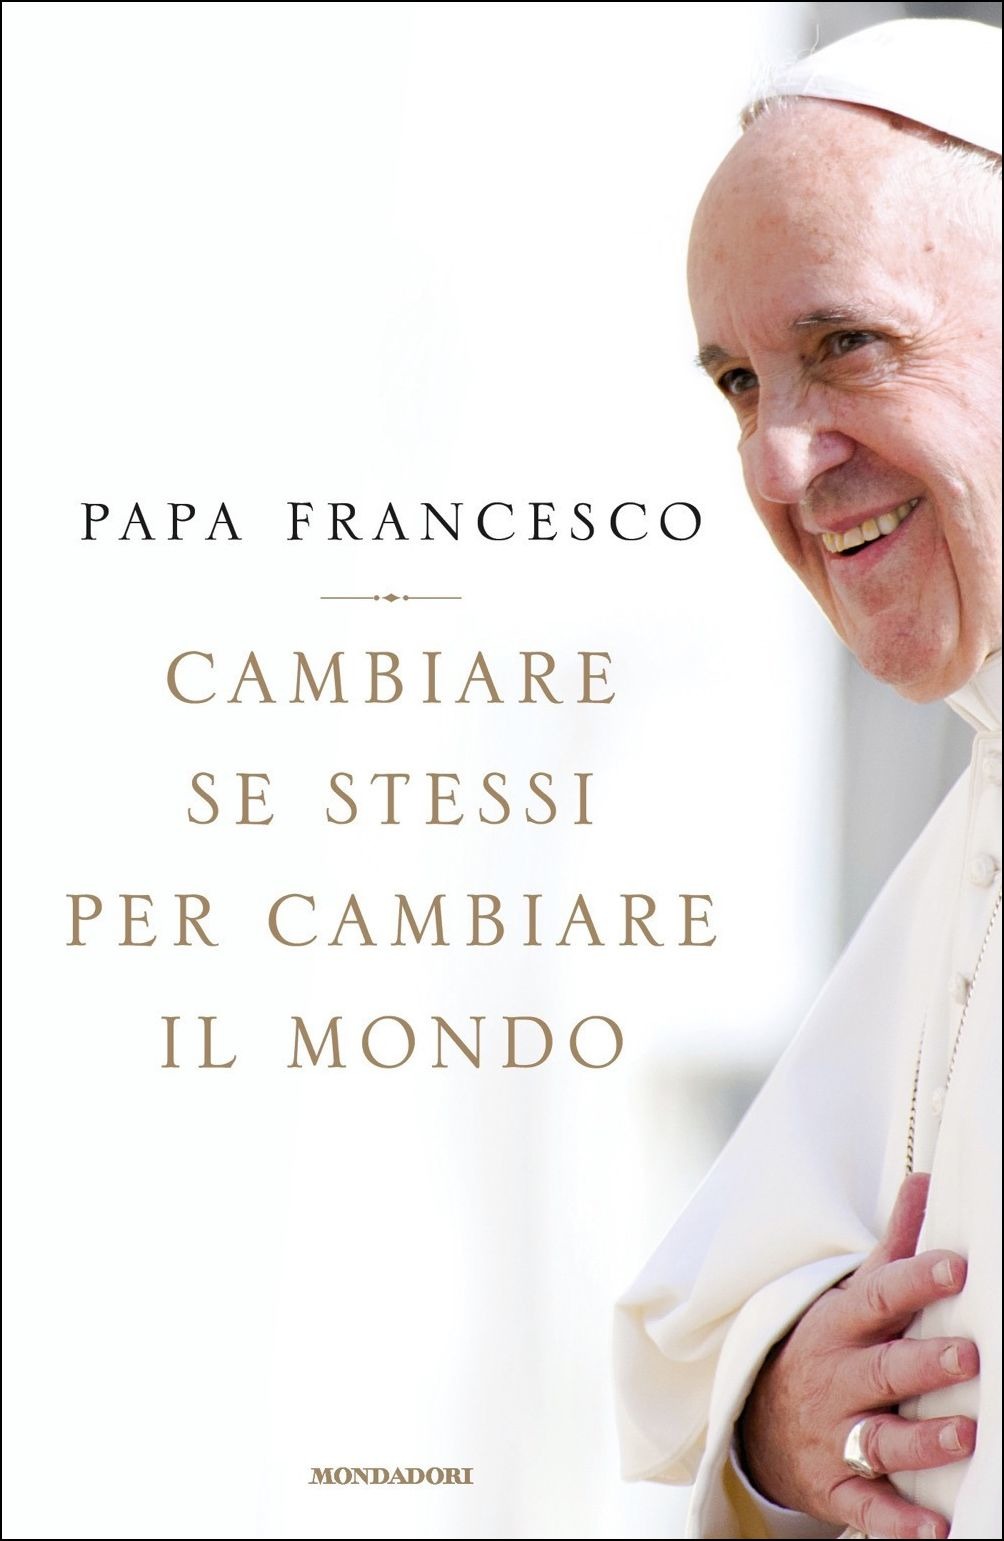 La copertina del libro di Papa Francesco "Cambiare sé stessi per cambiare il mondo"